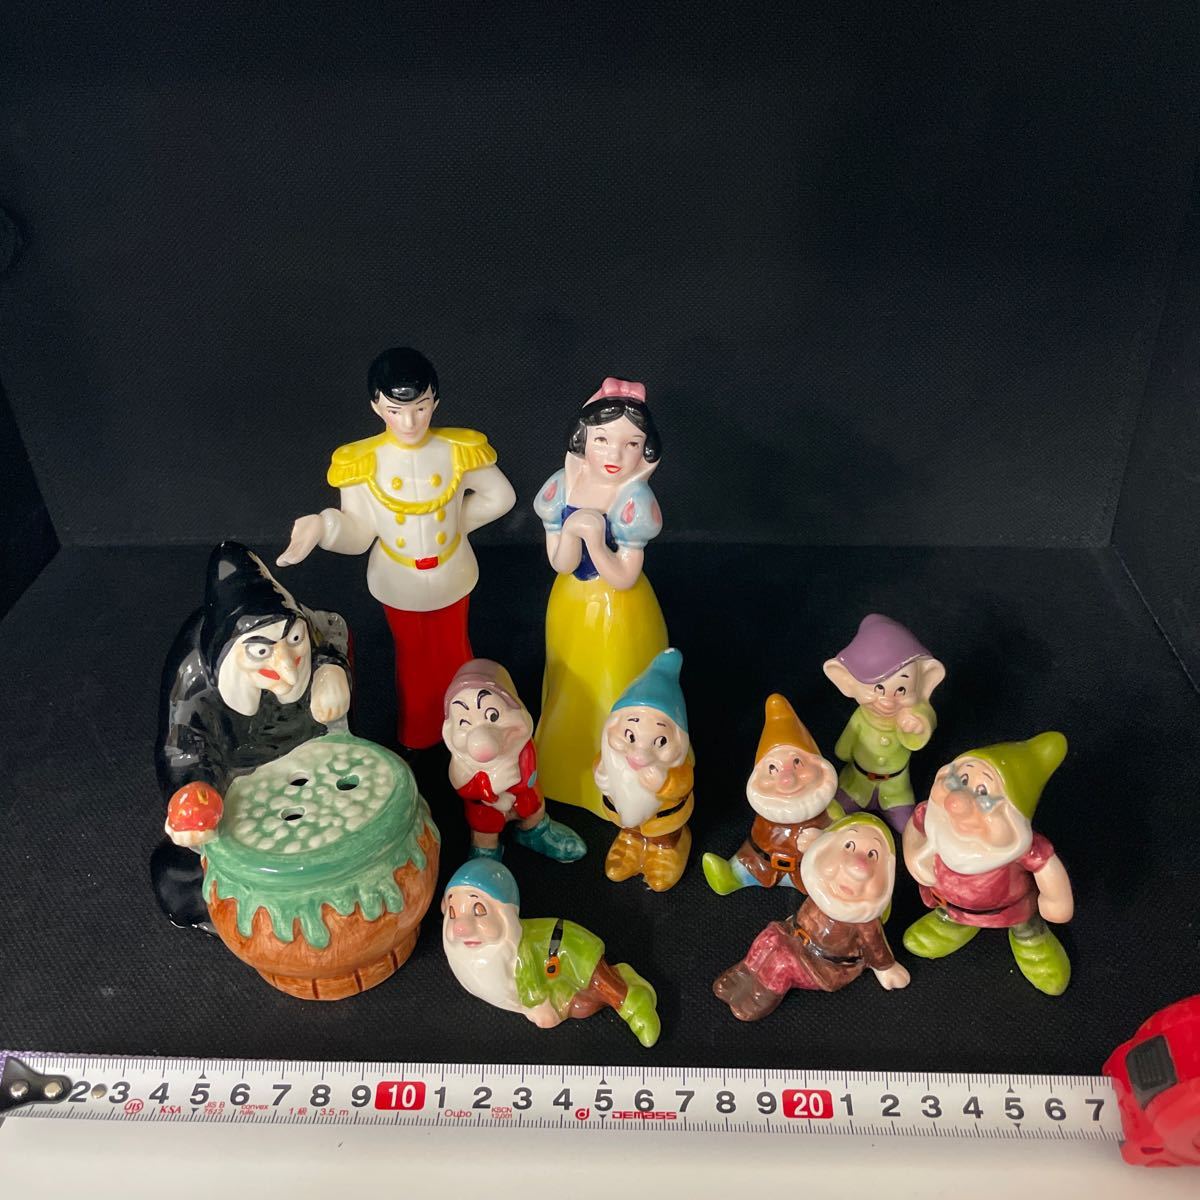 ディズニー フィギュア フィギュリン 白雪姫 王子様 魔女 7人の小人 Disney 陶器製 10体セット 240207T08_画像2